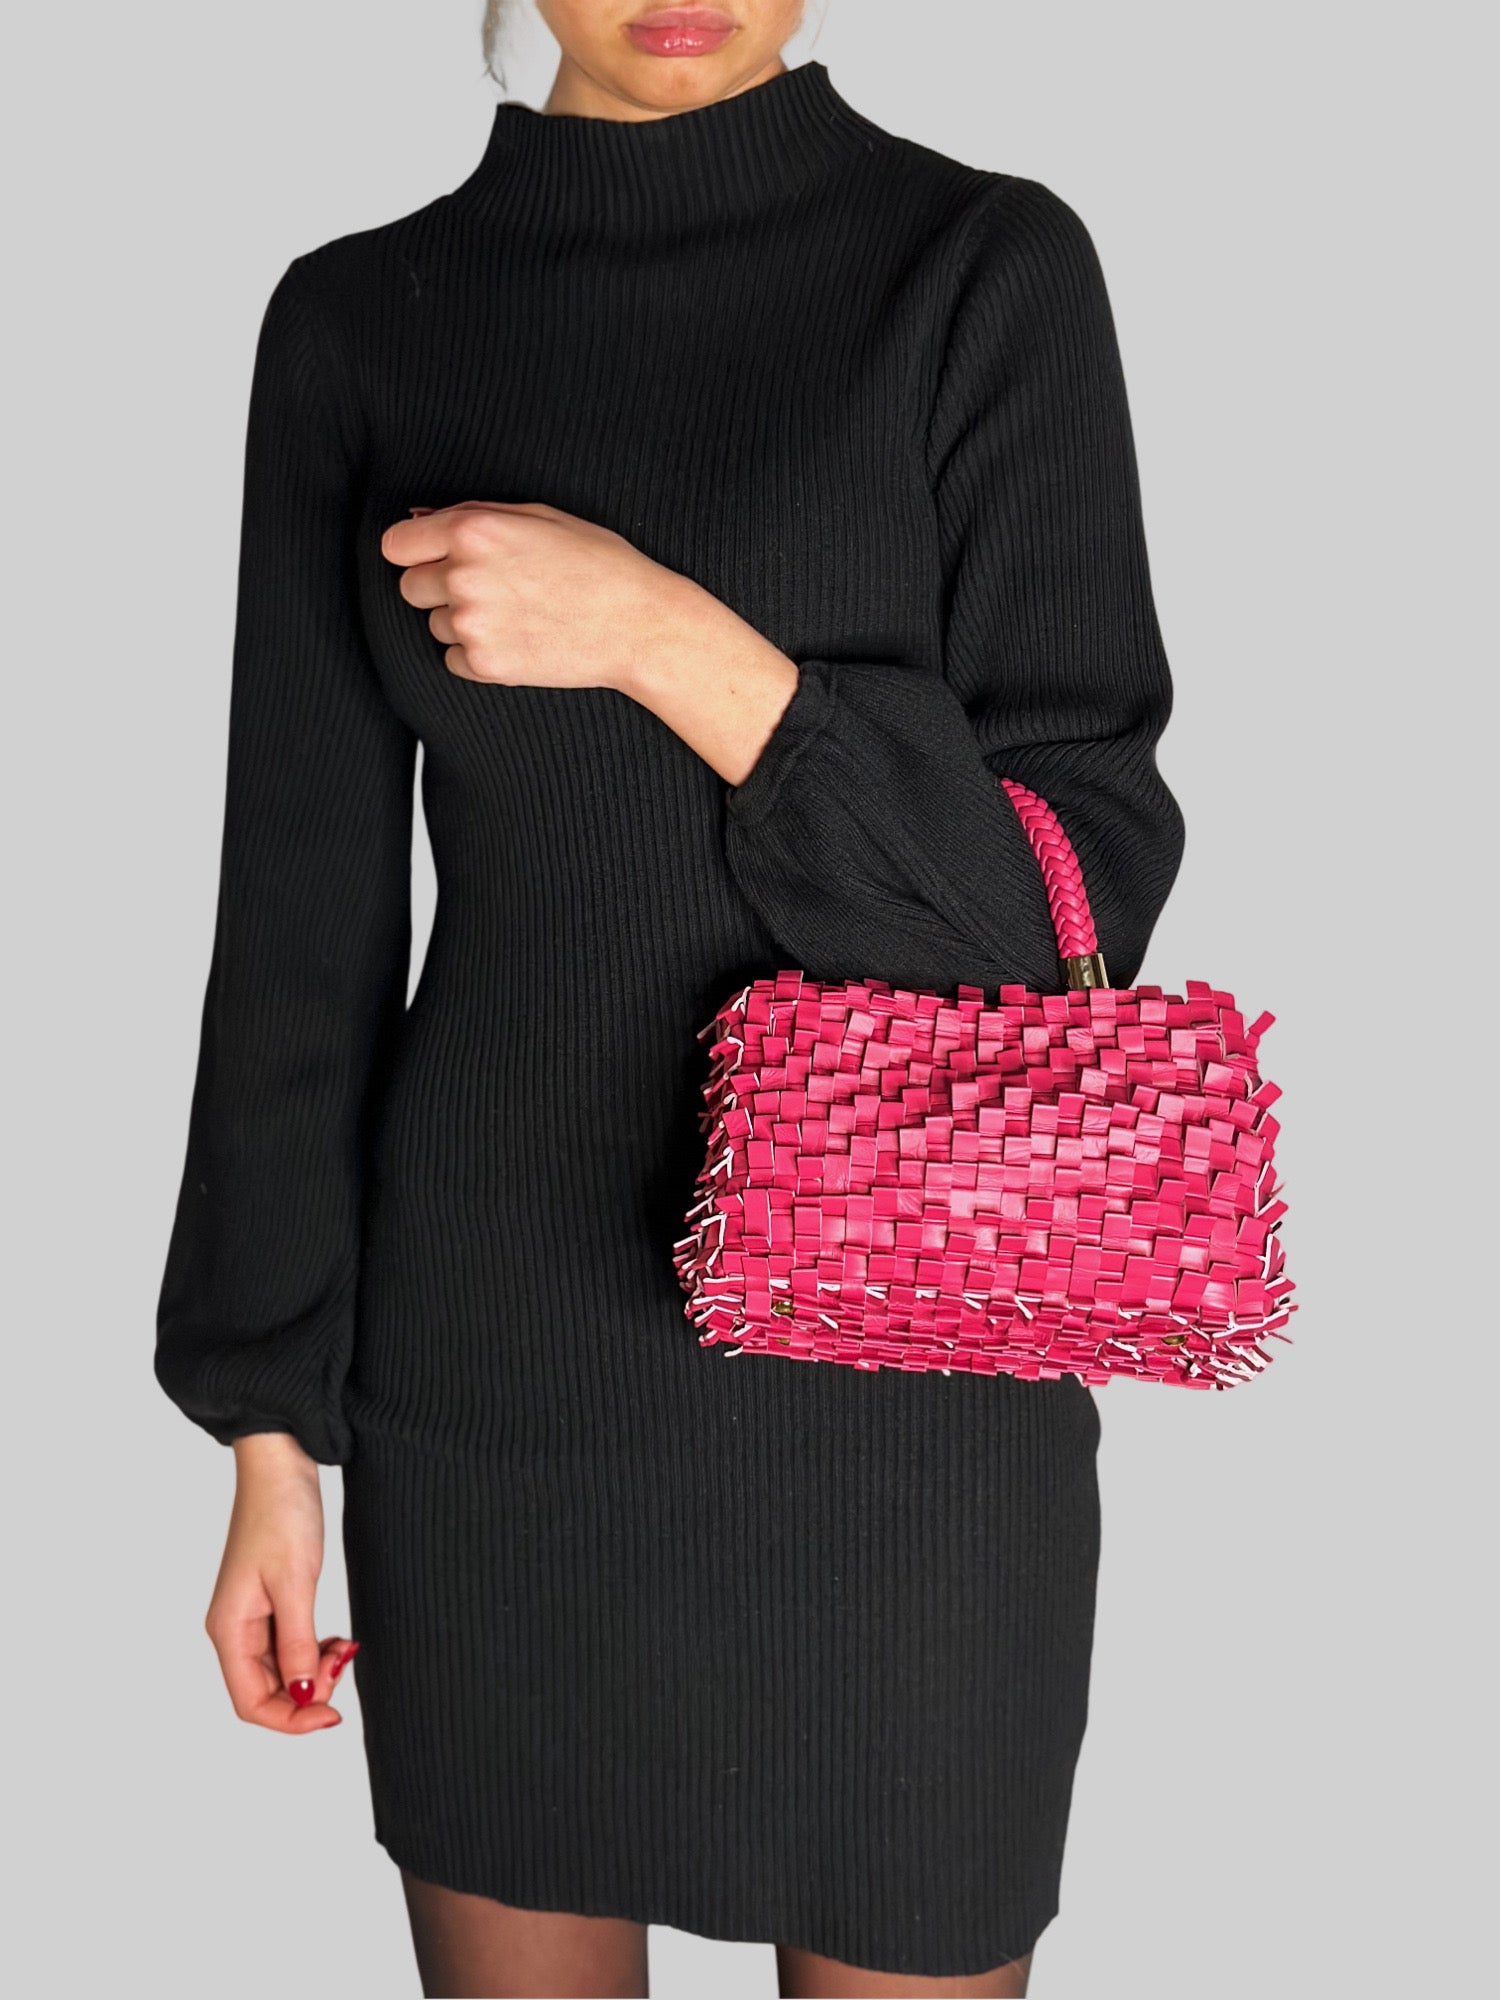 En ung kvinne i sort kjole stråler med en iøynefallende rosa Ribimini-veske, et elegant valg som tiltrekker oppmerksomhet.